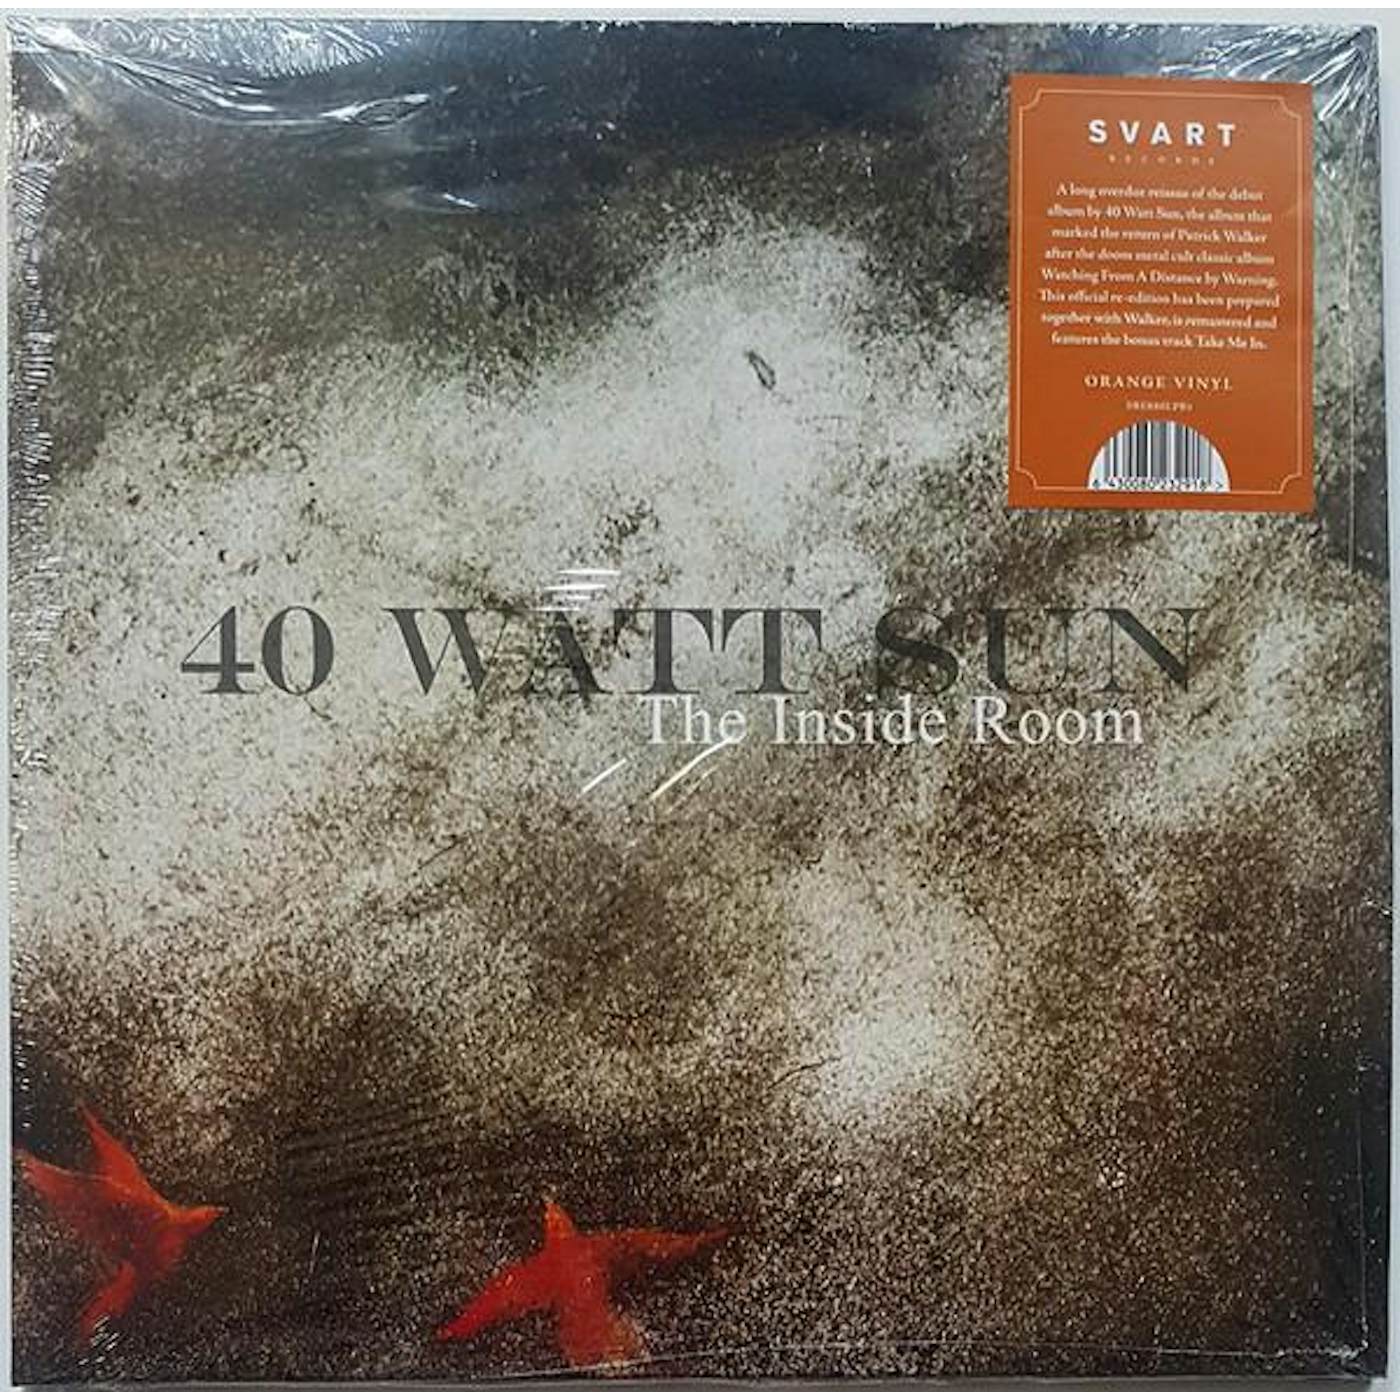 40 Watt Sun INSIDE ROOM Vinyl Record